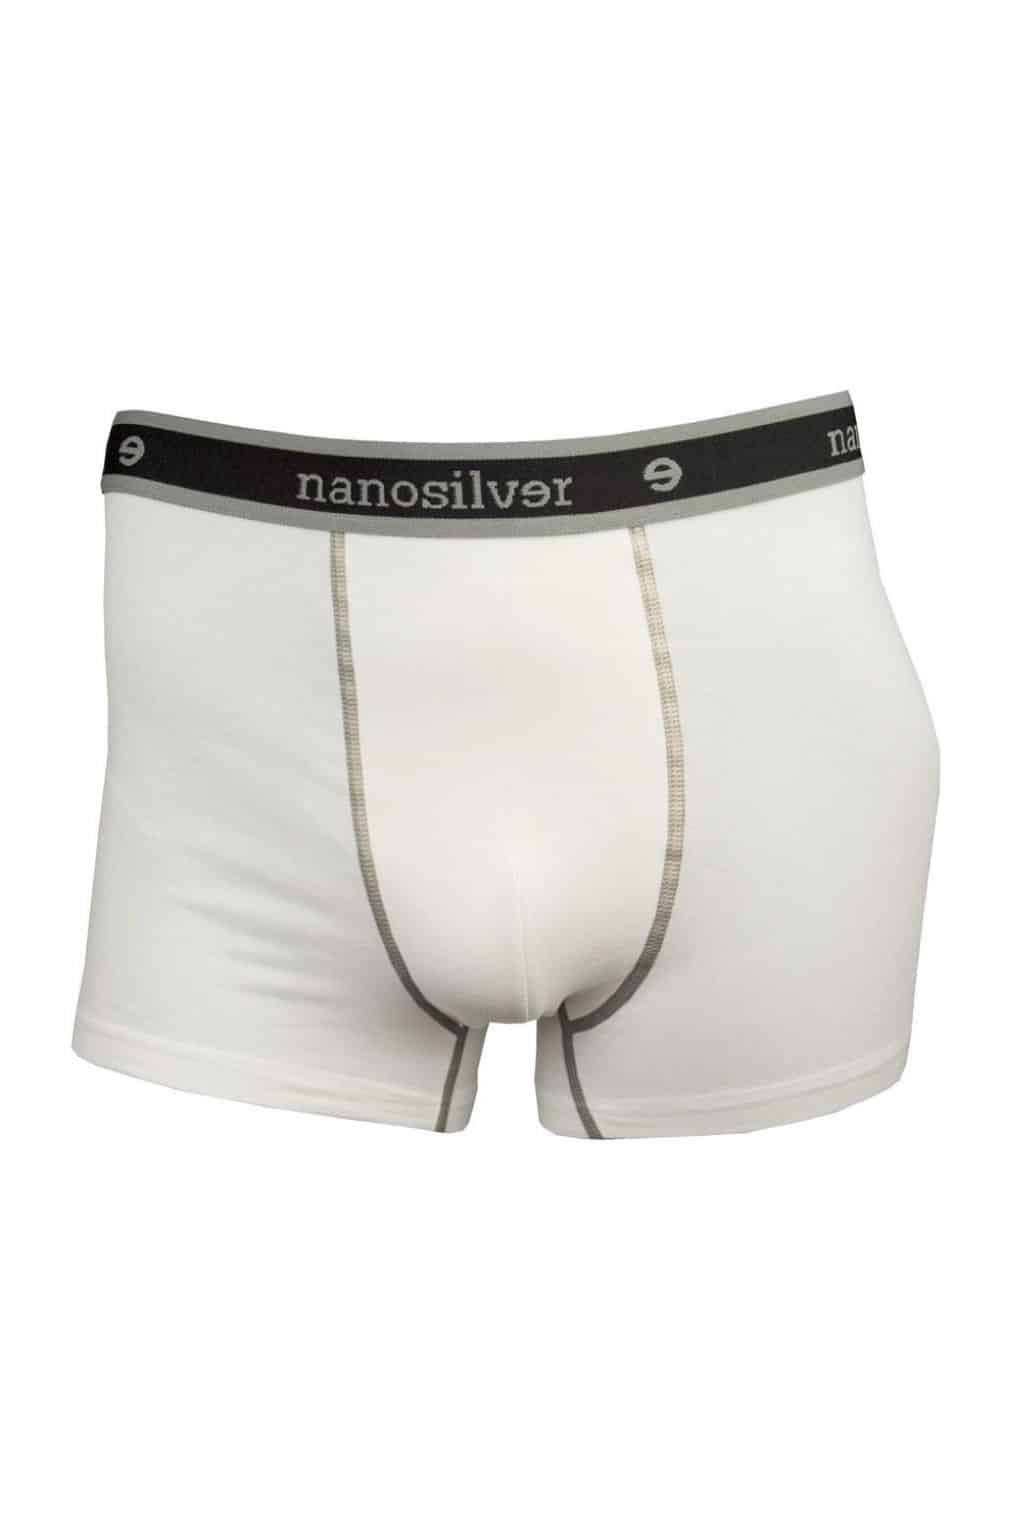 nanosilver® Nano boxerky s gumou nanosilver bez zadního švu bílé Velikost: L